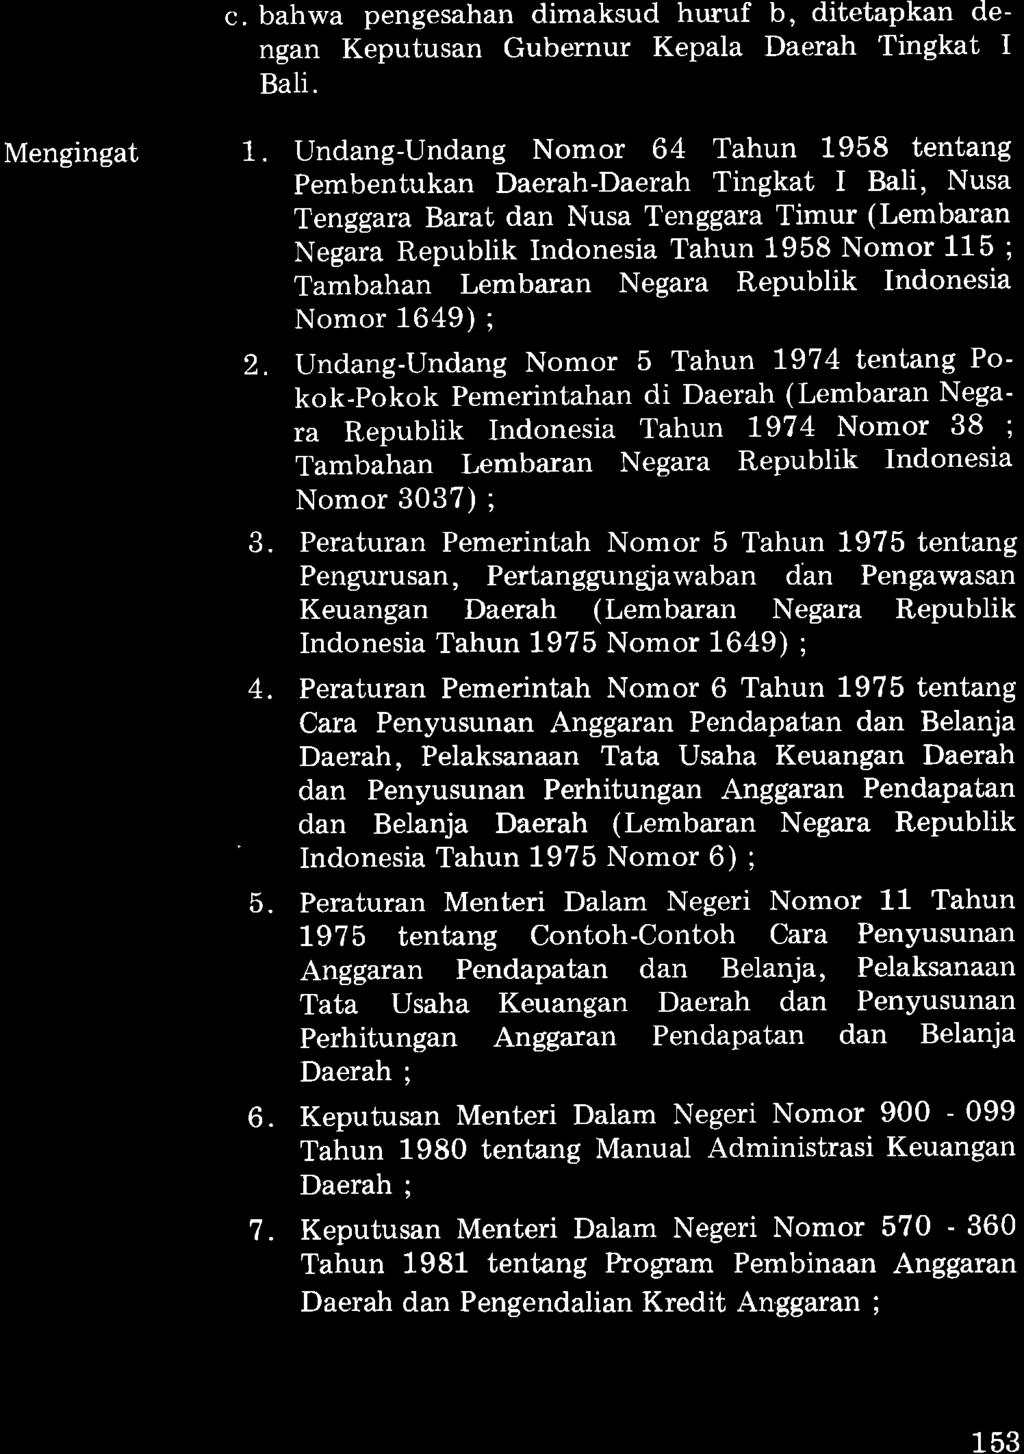 c. bahwa pengesahan dimaksud hwuf b, ditetapkan dengan Keputusan Gubernur Kepala Daerah Tingkat I Bali. Mengingat 1.